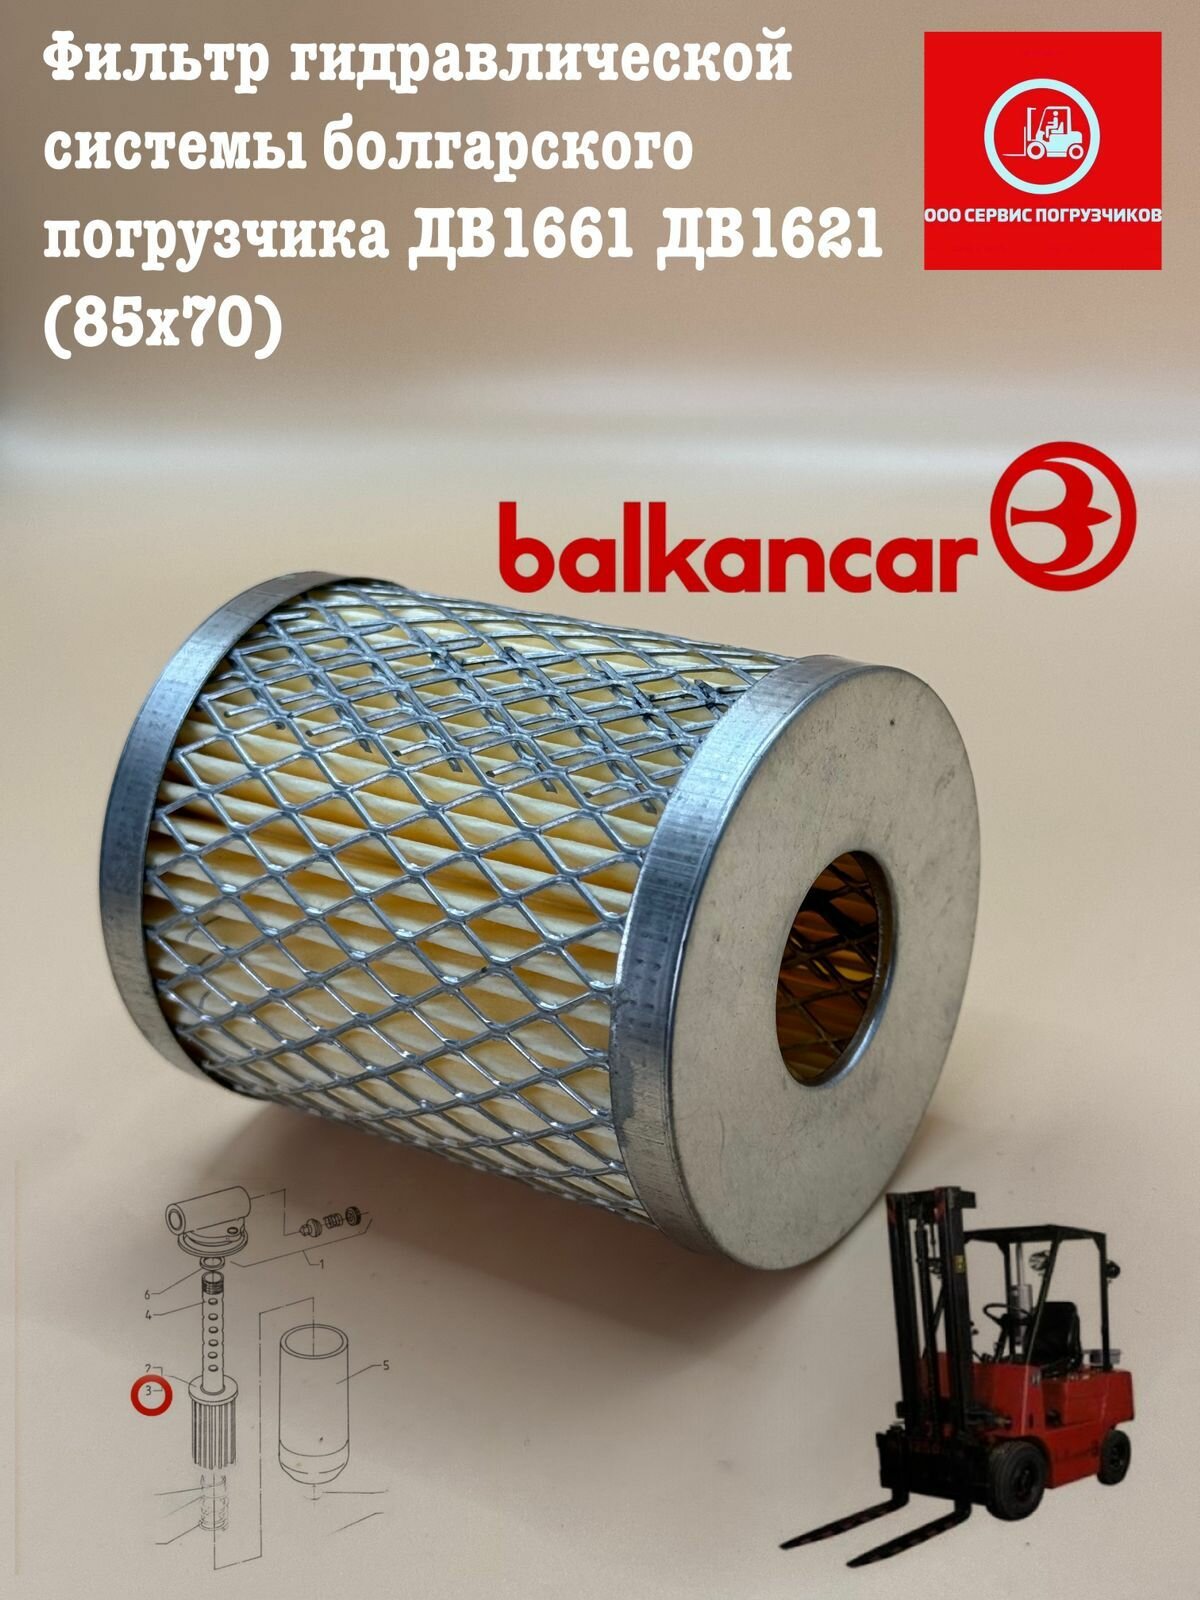 Фильтр гидравлической системы болгарского погрузчика ДВ1661 ДВ1621 (85х70)